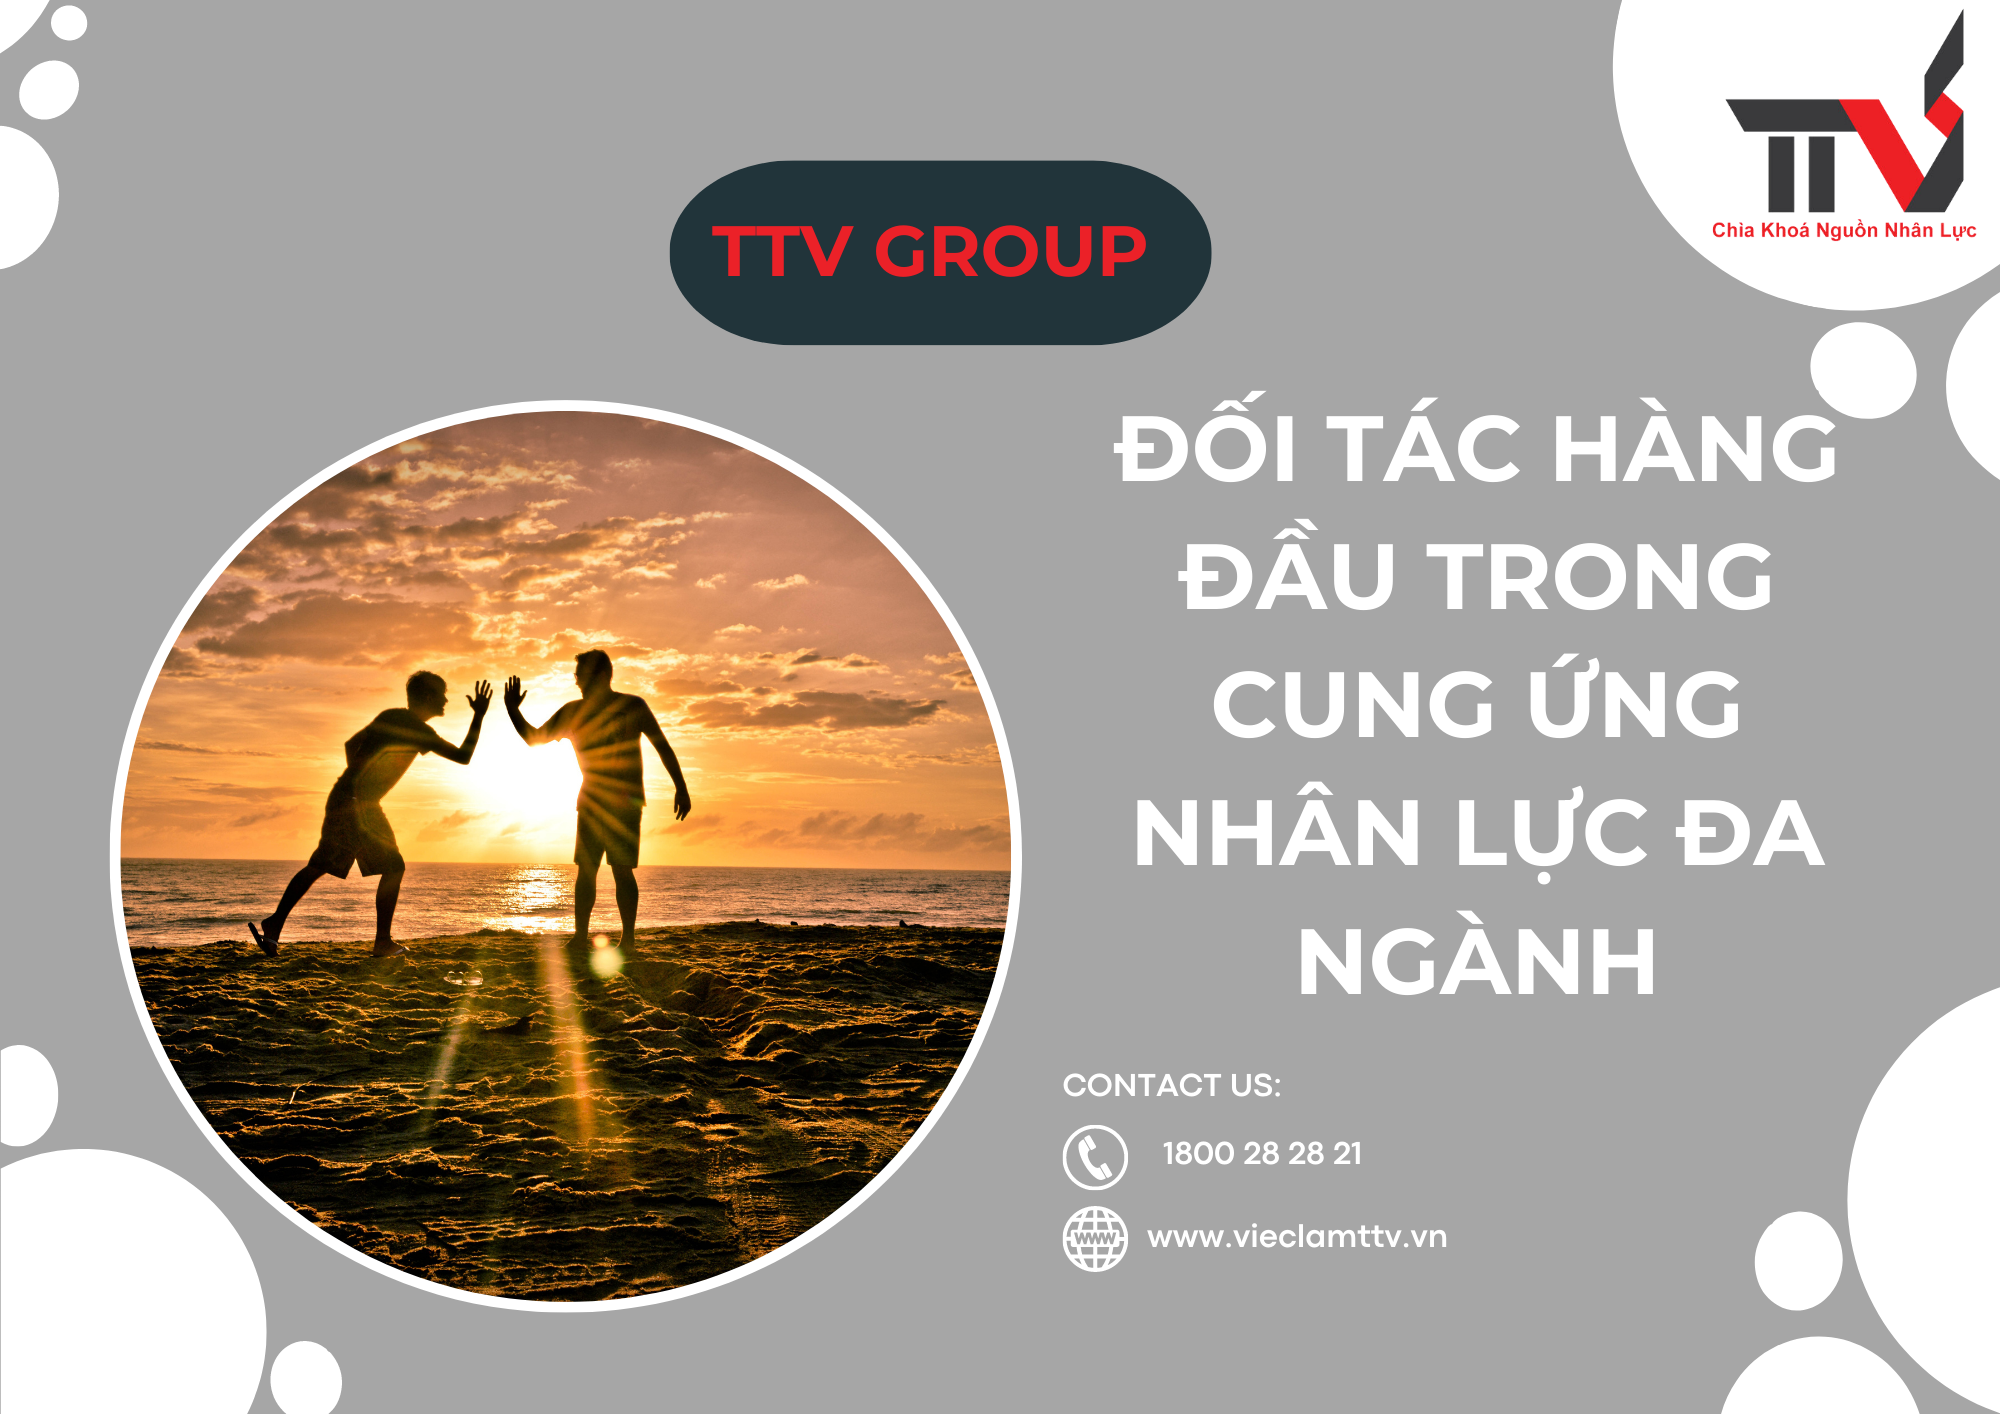 TTV Group - Đối tác hàng đầu trong cung ứng nhân lực đa ngành tại khu vực Hồ Chí Minh, Bình Dương và Đồng Nai